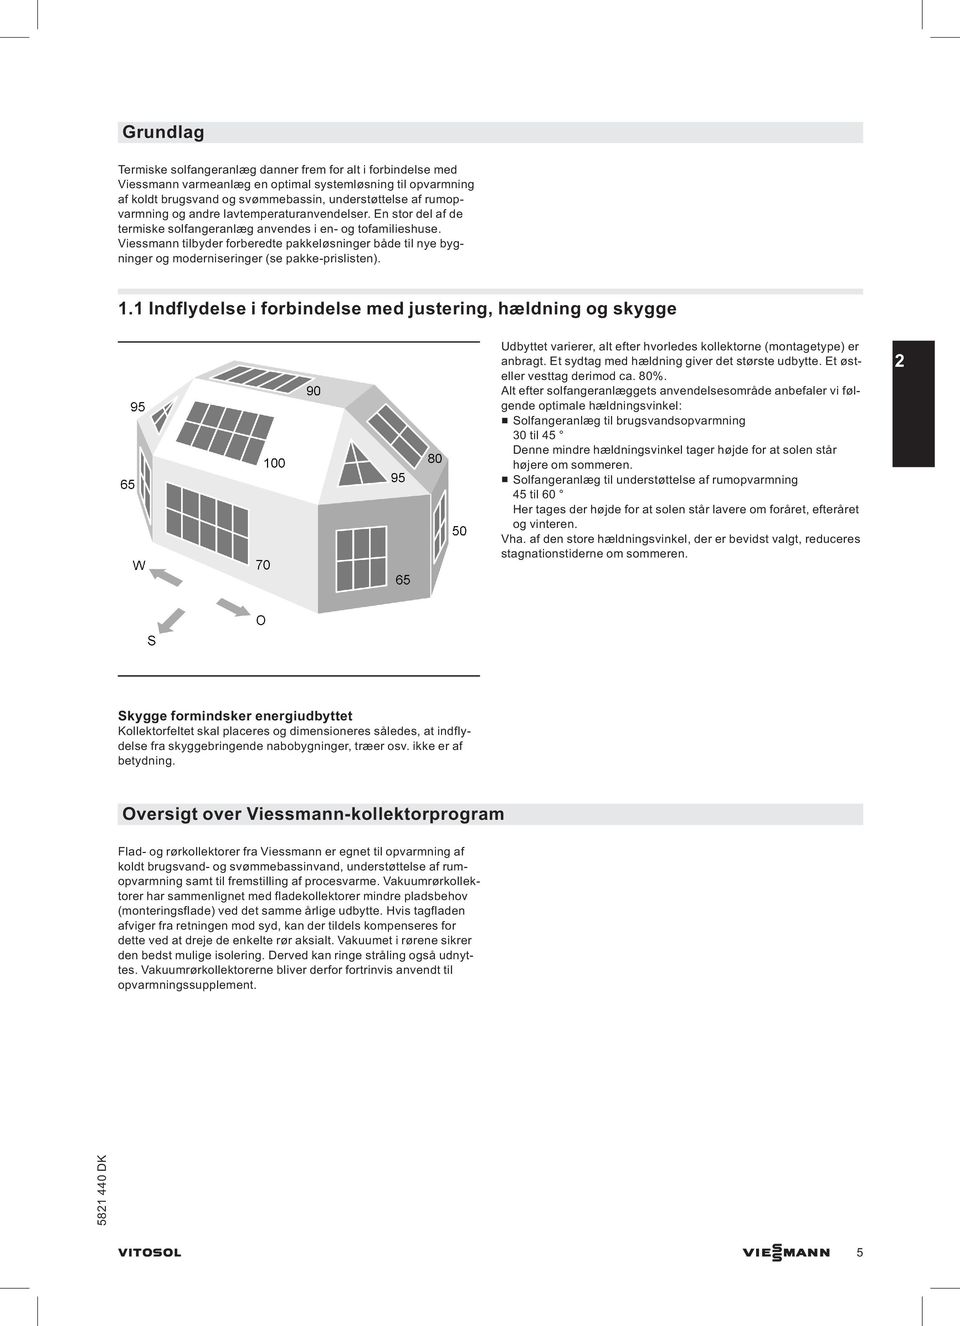 Viessmann tilbyder forberedte pakkeløsninger både til nye bygninger og moderniseringer (se pakke-prislisten). 1.